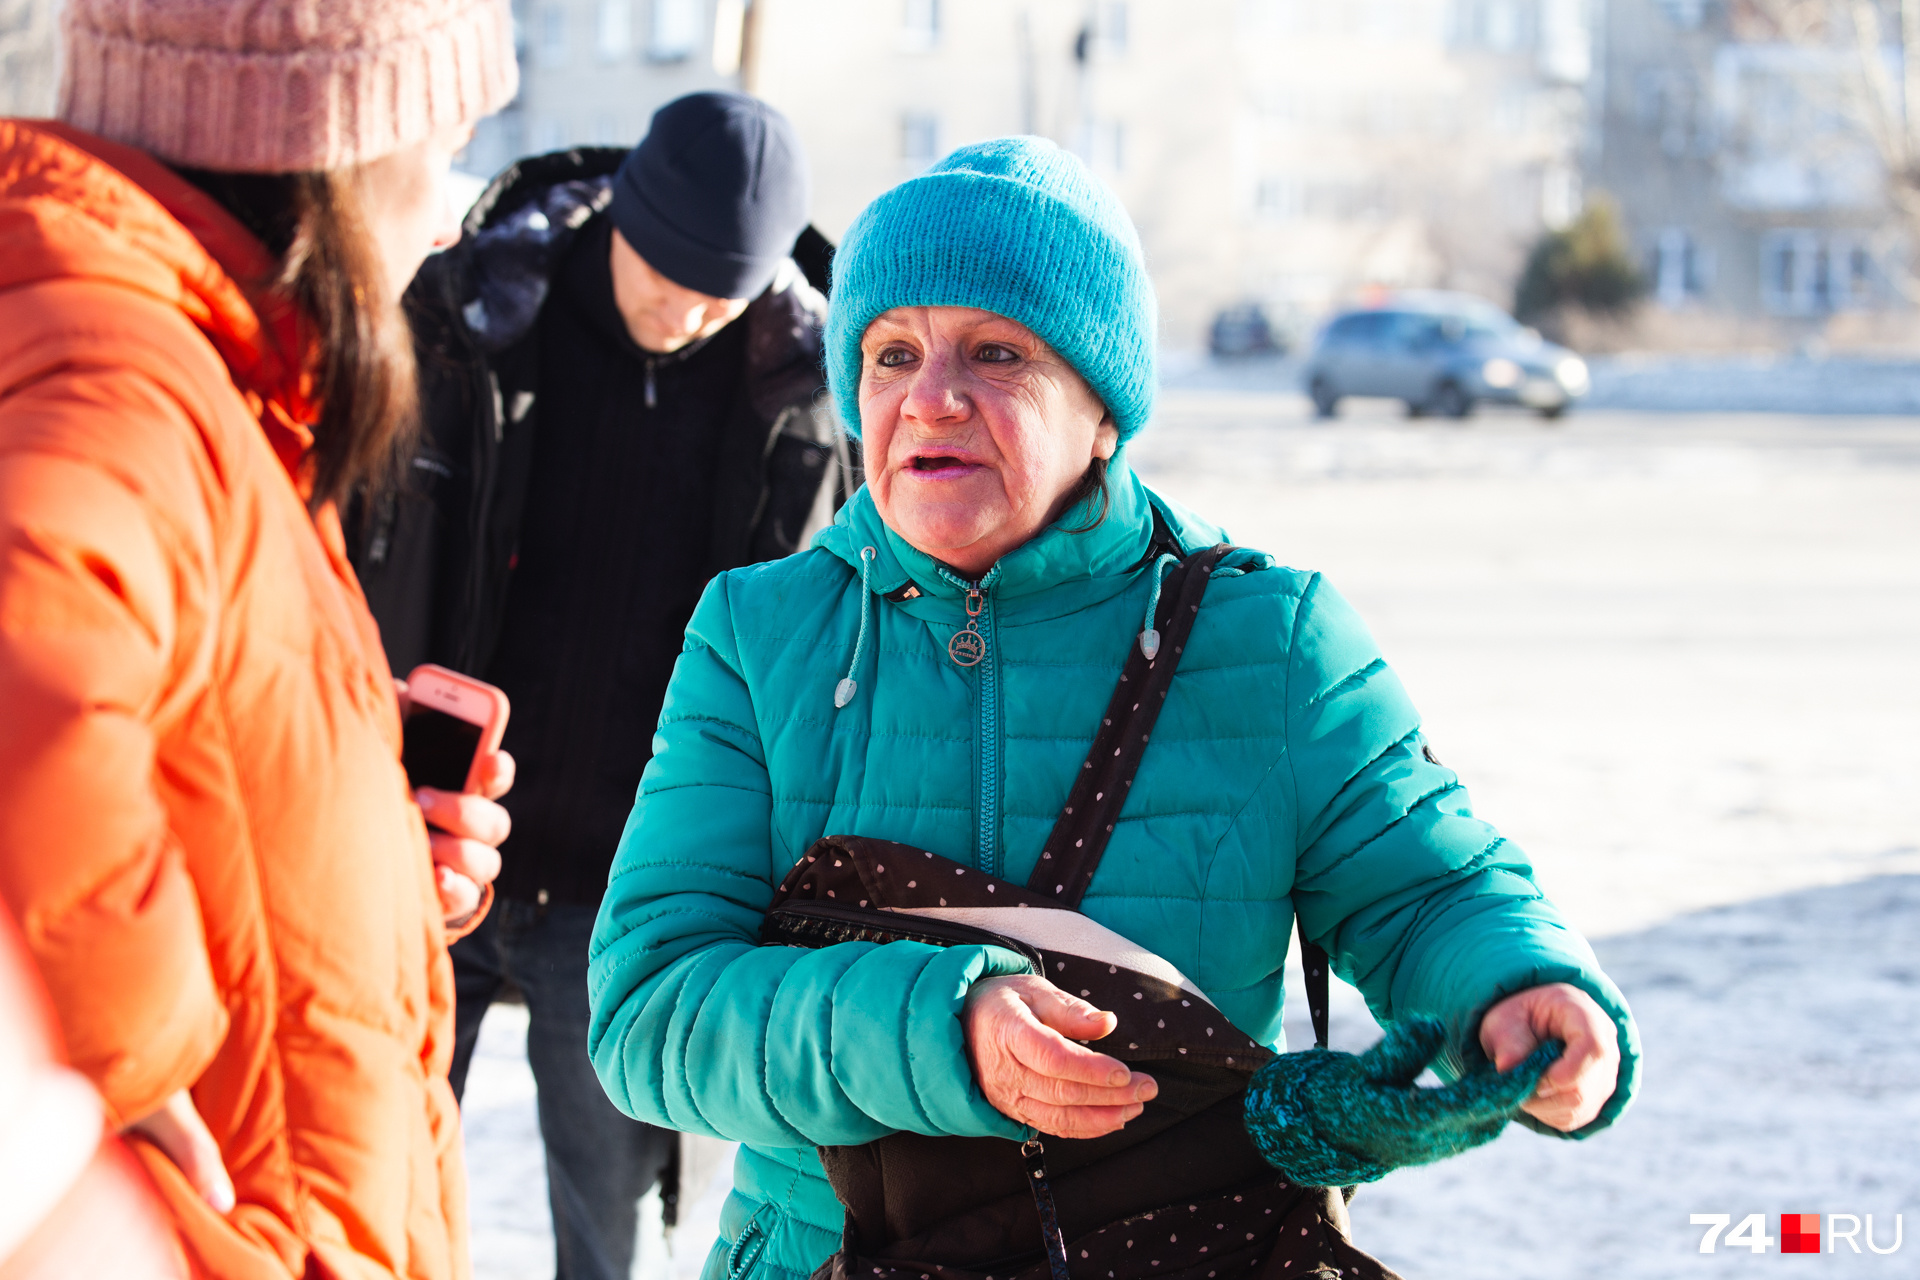 Ларисе 59 лет, и она выживает на 7 тысяч рублей в месяц